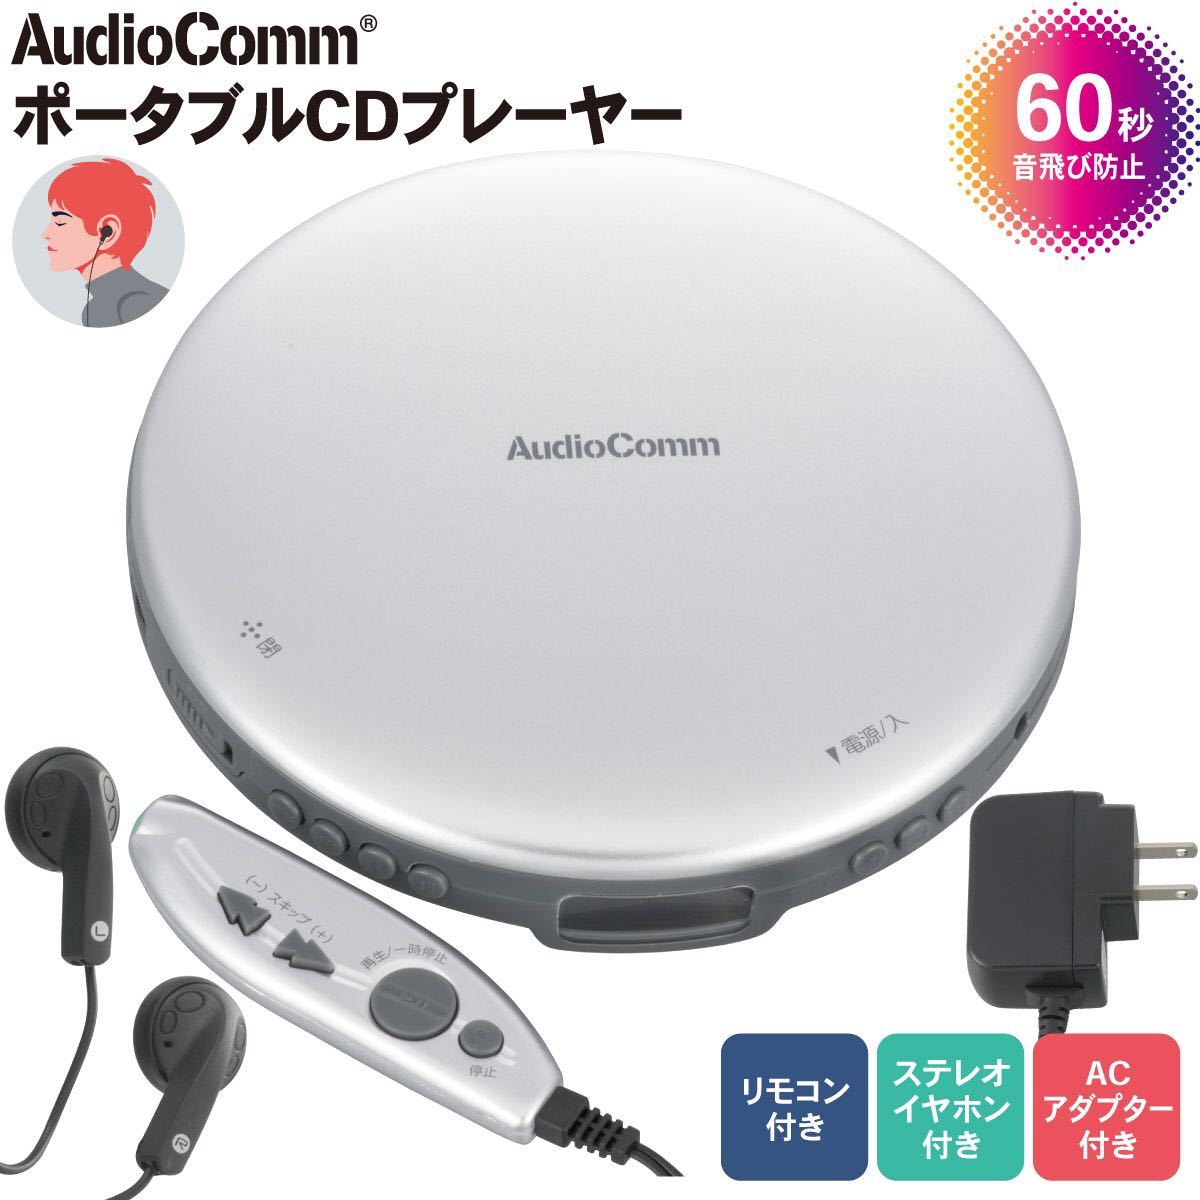 送料無料◆AudioComm ポータブルCDプレーヤー リモコン付き ACアダプター付き シルバー CDP-3870Z-S 新品の画像1